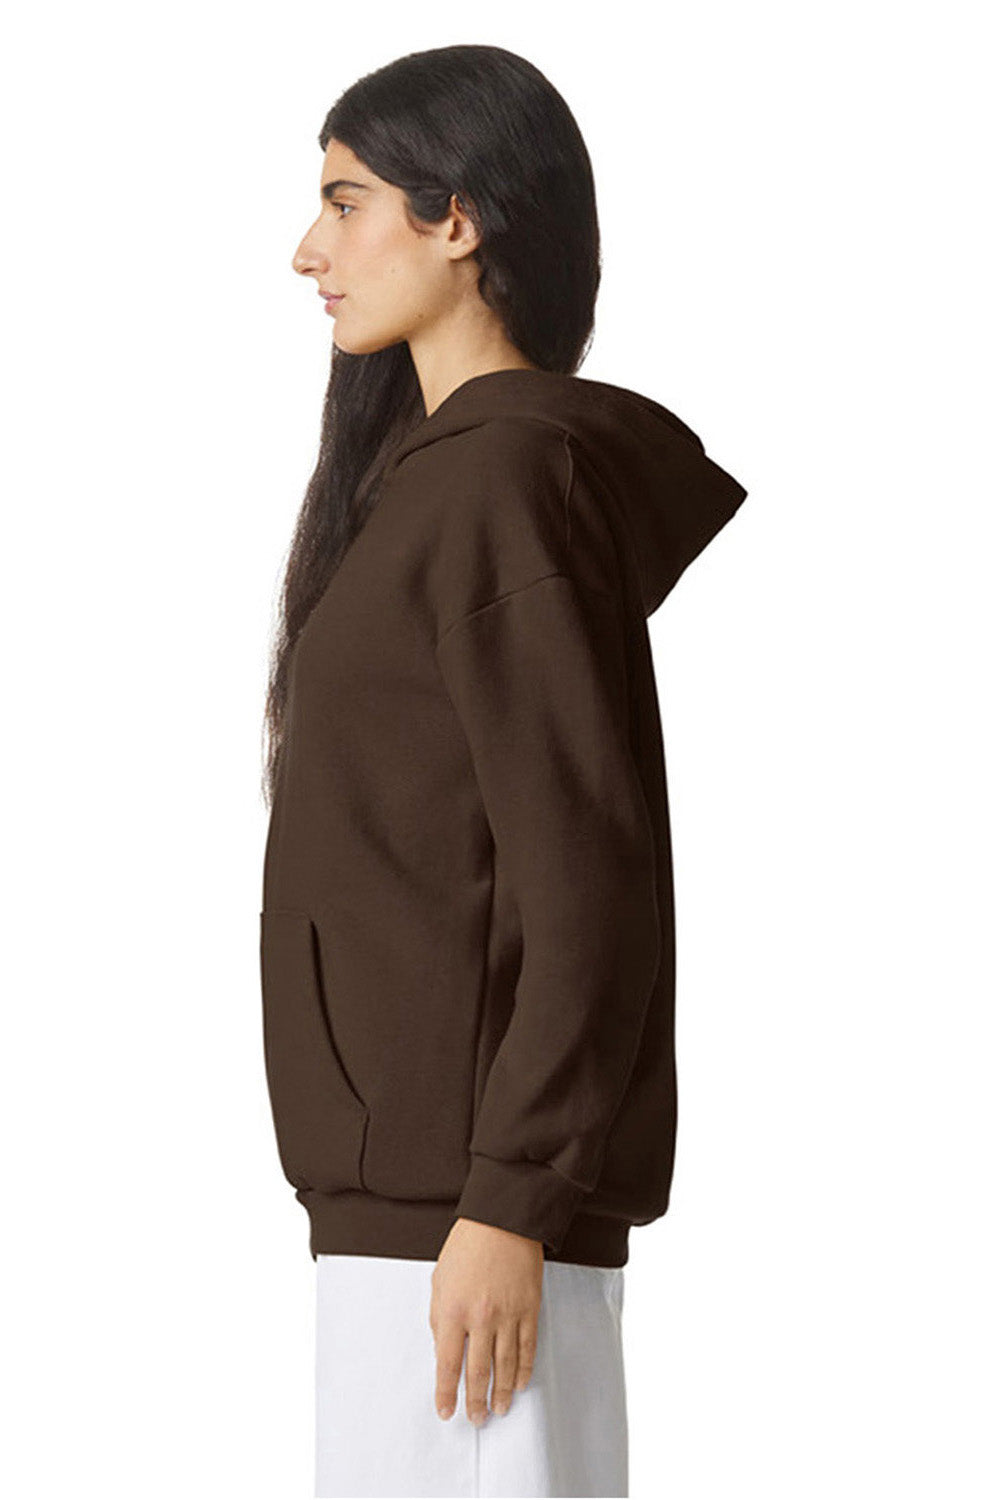 American Apparel RF498 Mens ReFlex Fleece Hooded Sweatshirt Hoodie Brown Model Side